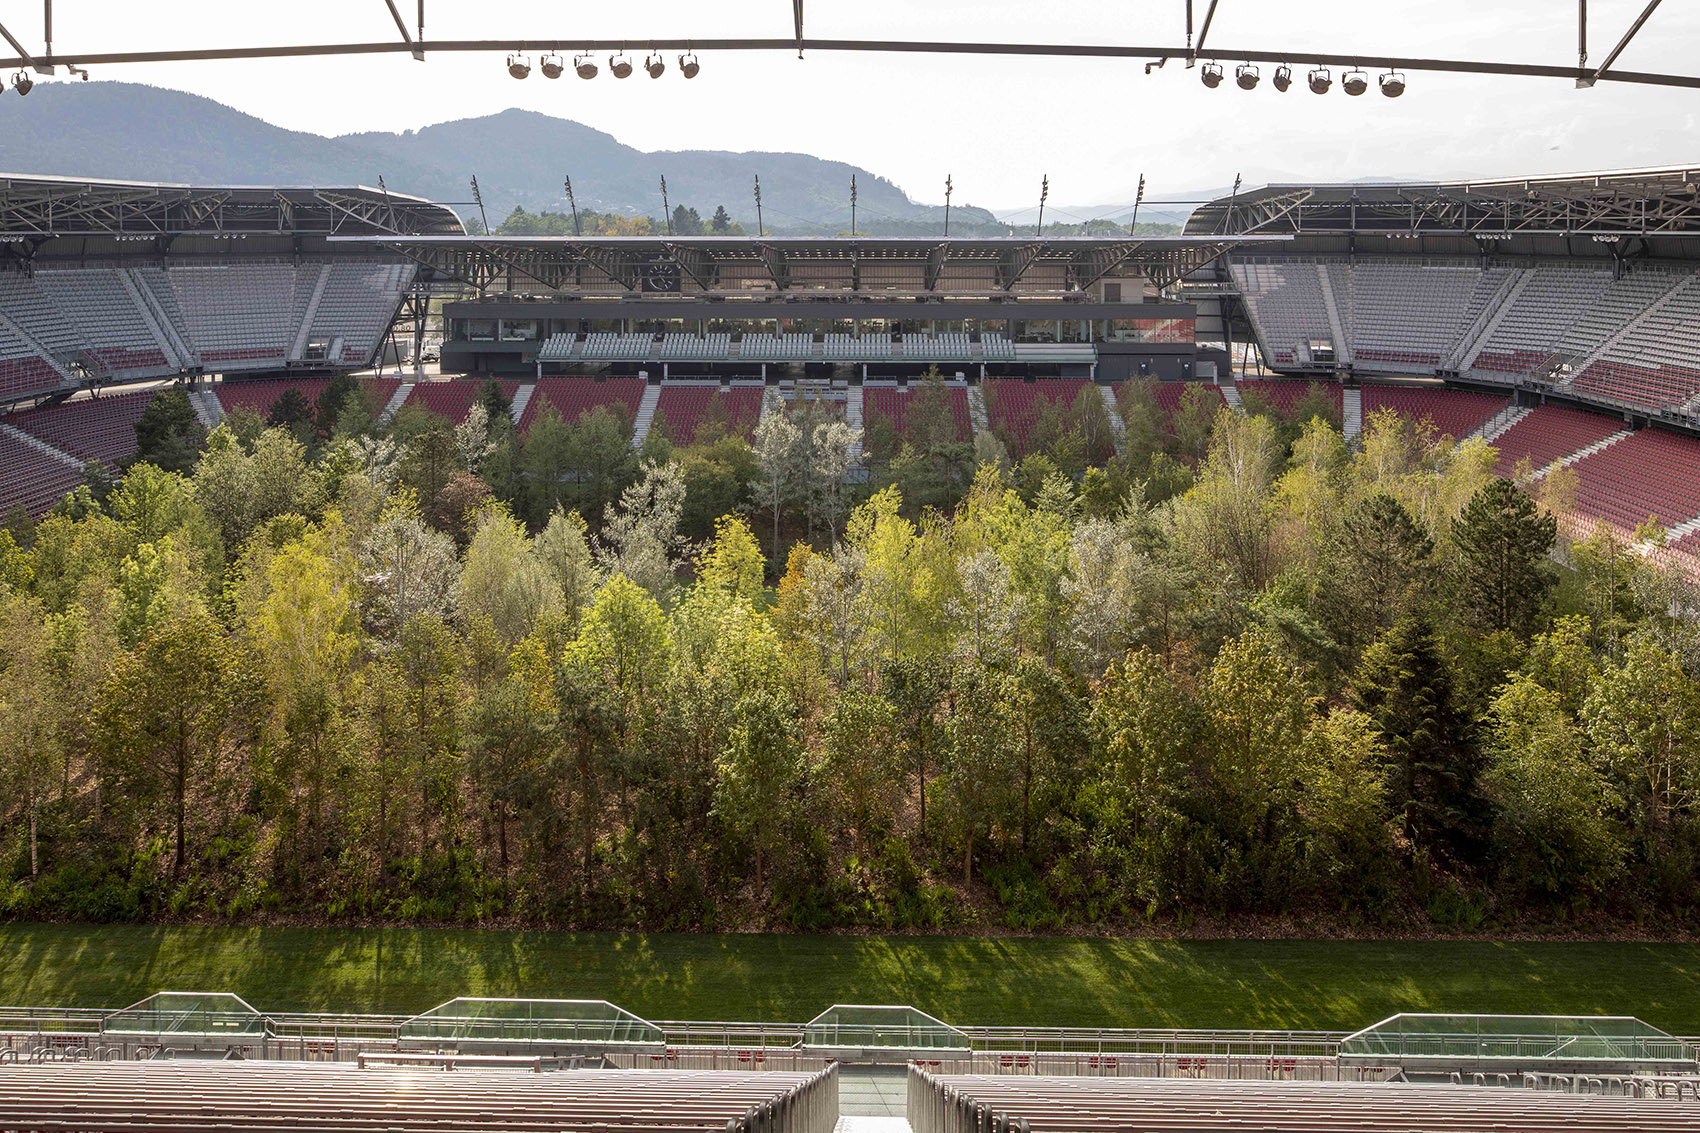 “致森林——自然不倦的魅力”展览，奥地利/足球场变身欧洲中部森林-36